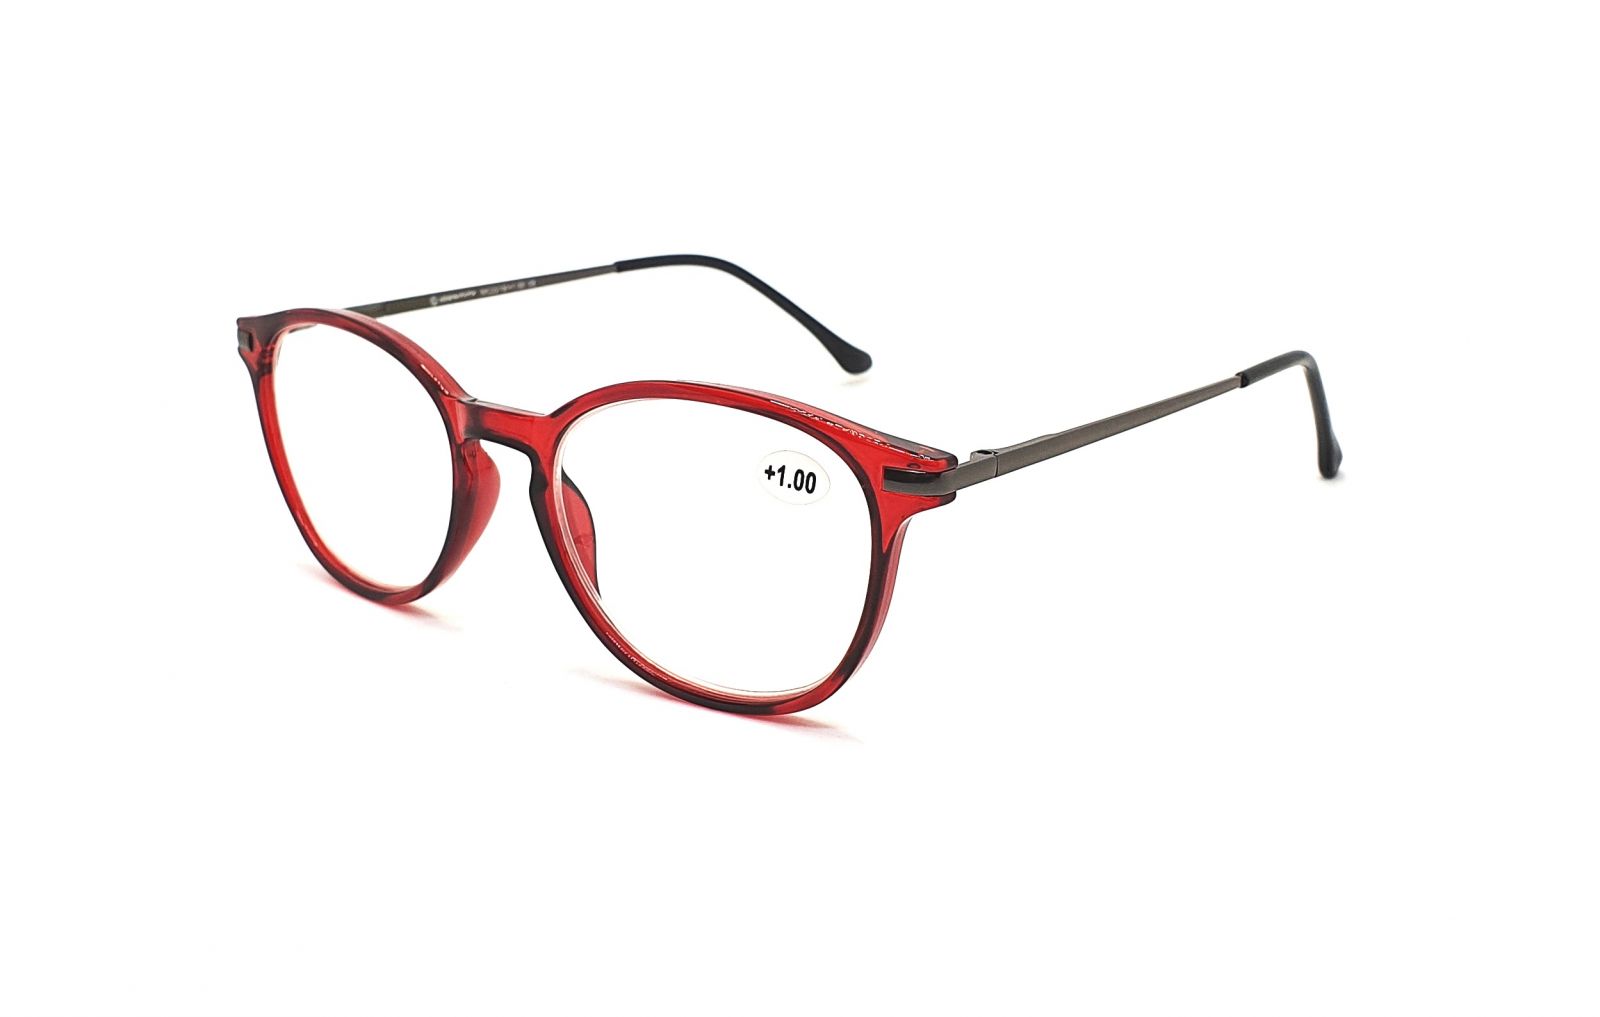 IDENTITY Dioptrické brýle MC2219 +1,00 flex red